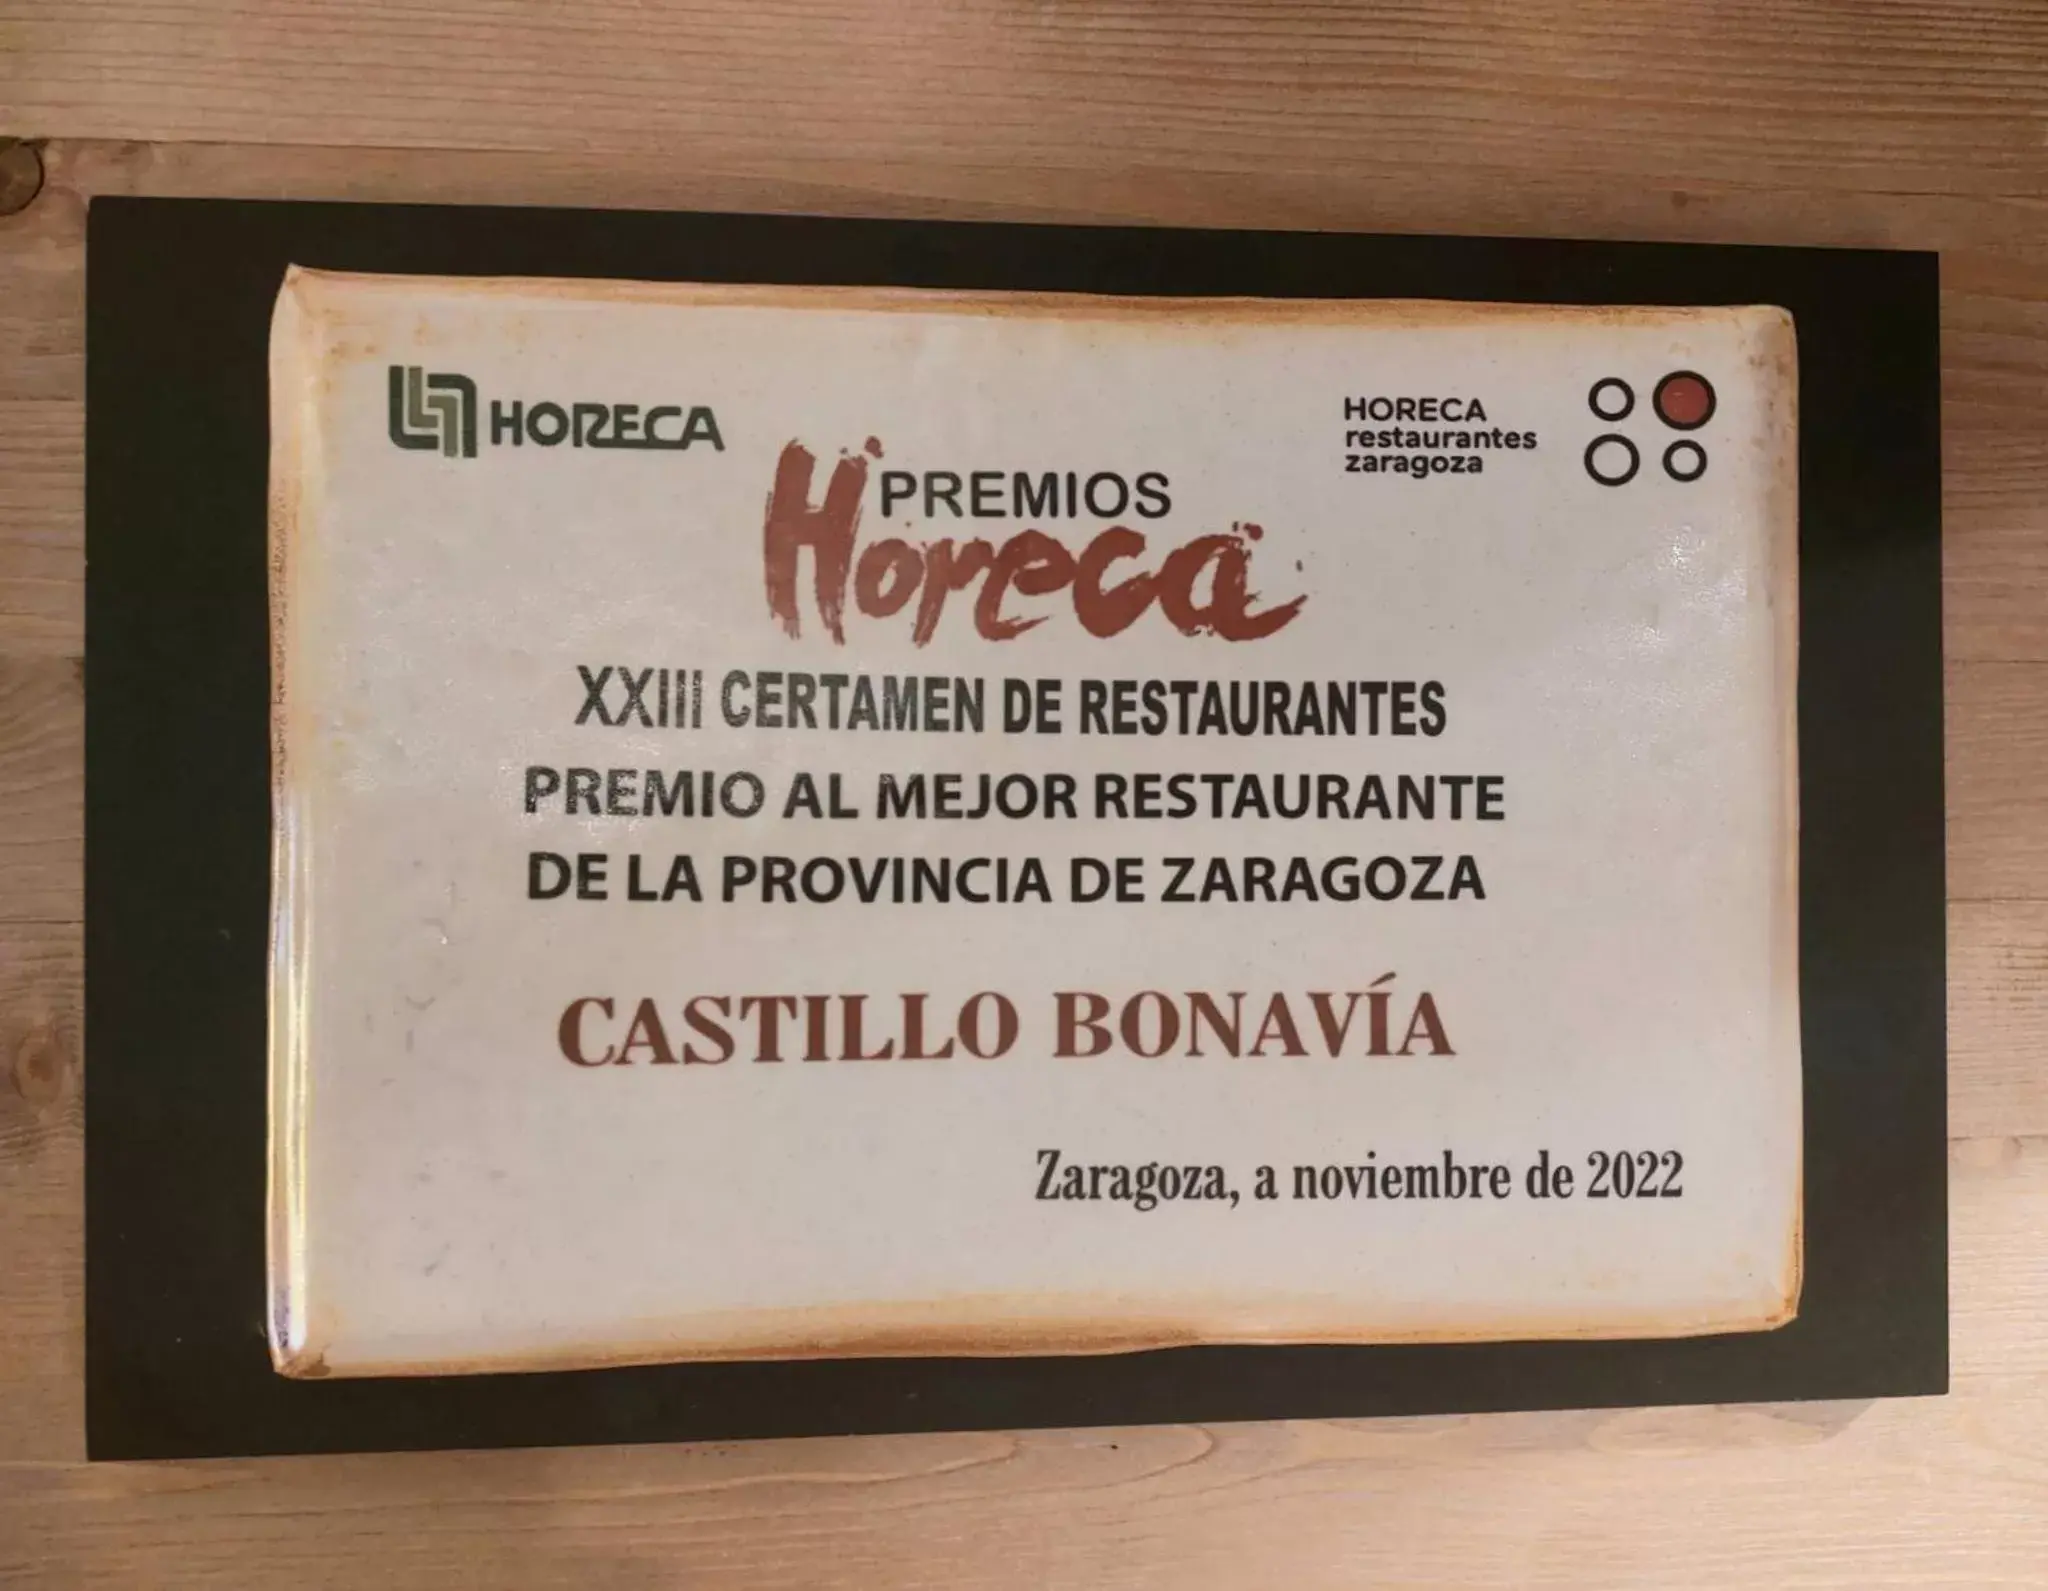 Restaurant/places to eat in Hotel Castillo Bonavía